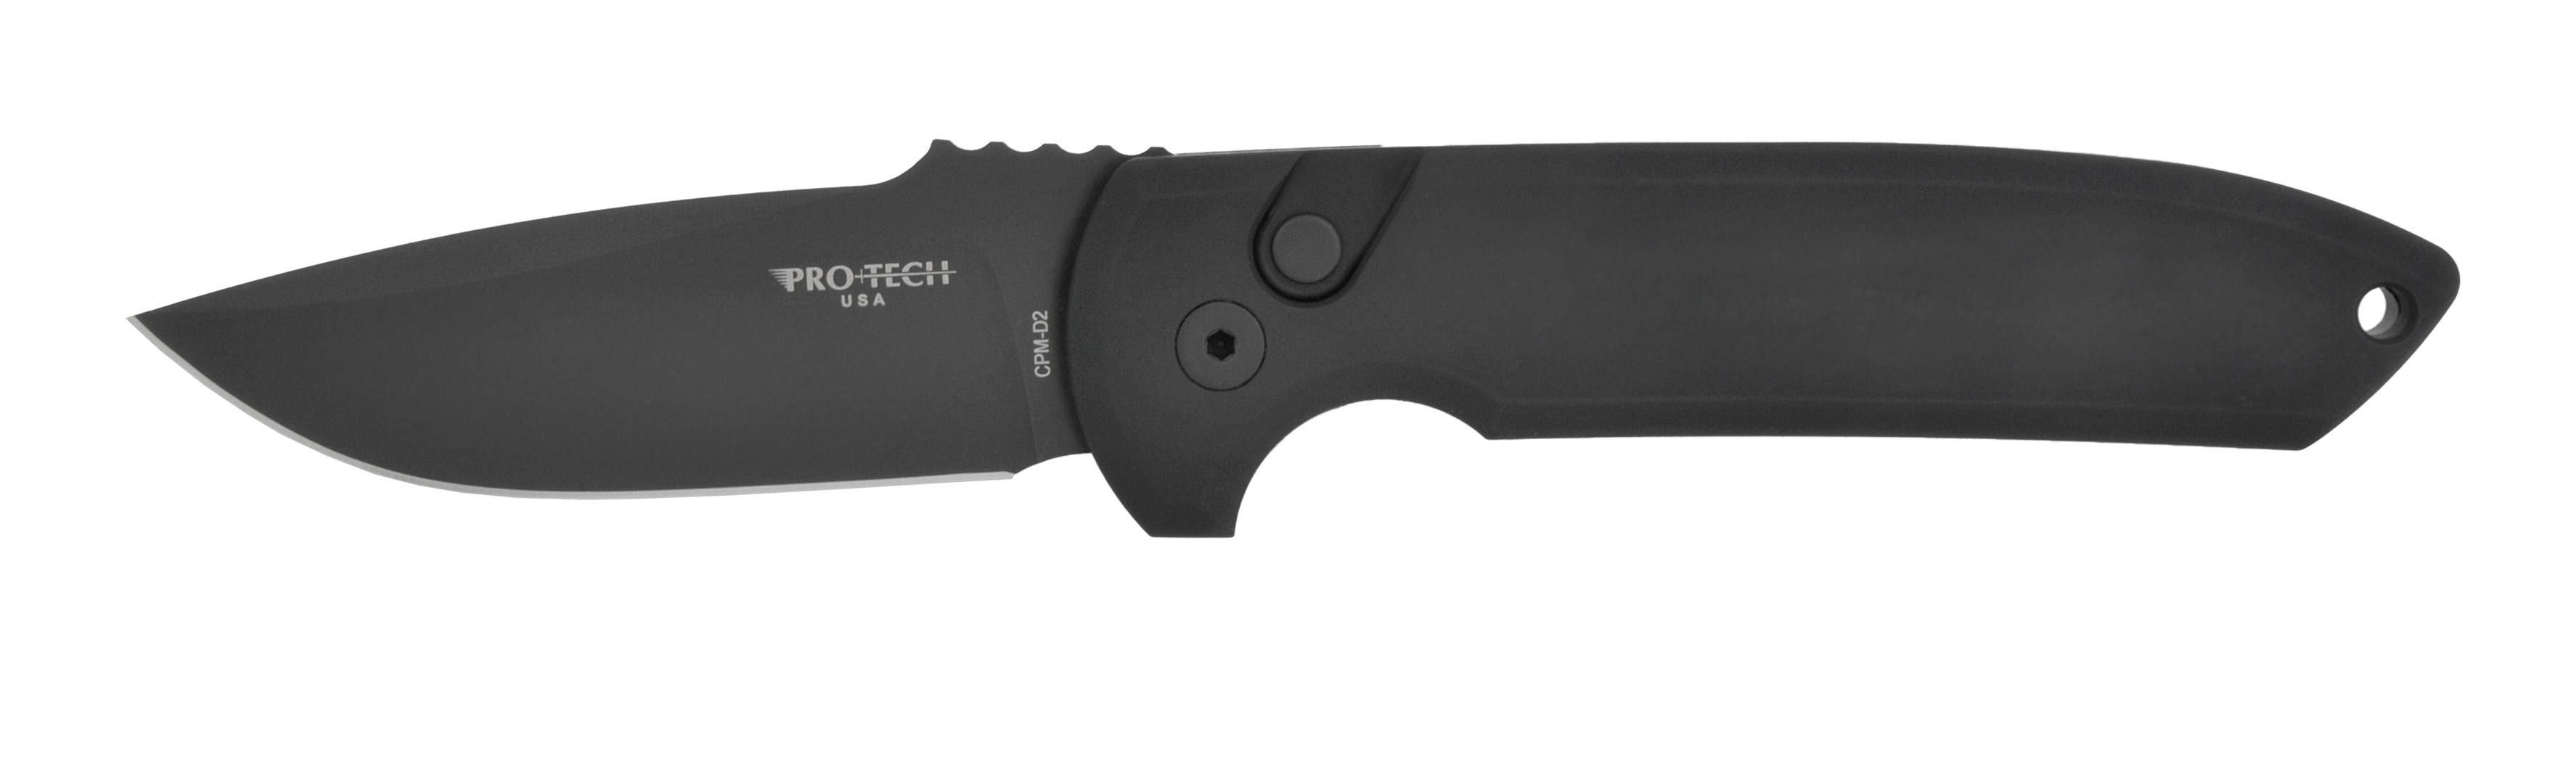 Нож Pro-Tech Rockeye складной сталь D2 рукоять алюминий - фото 1